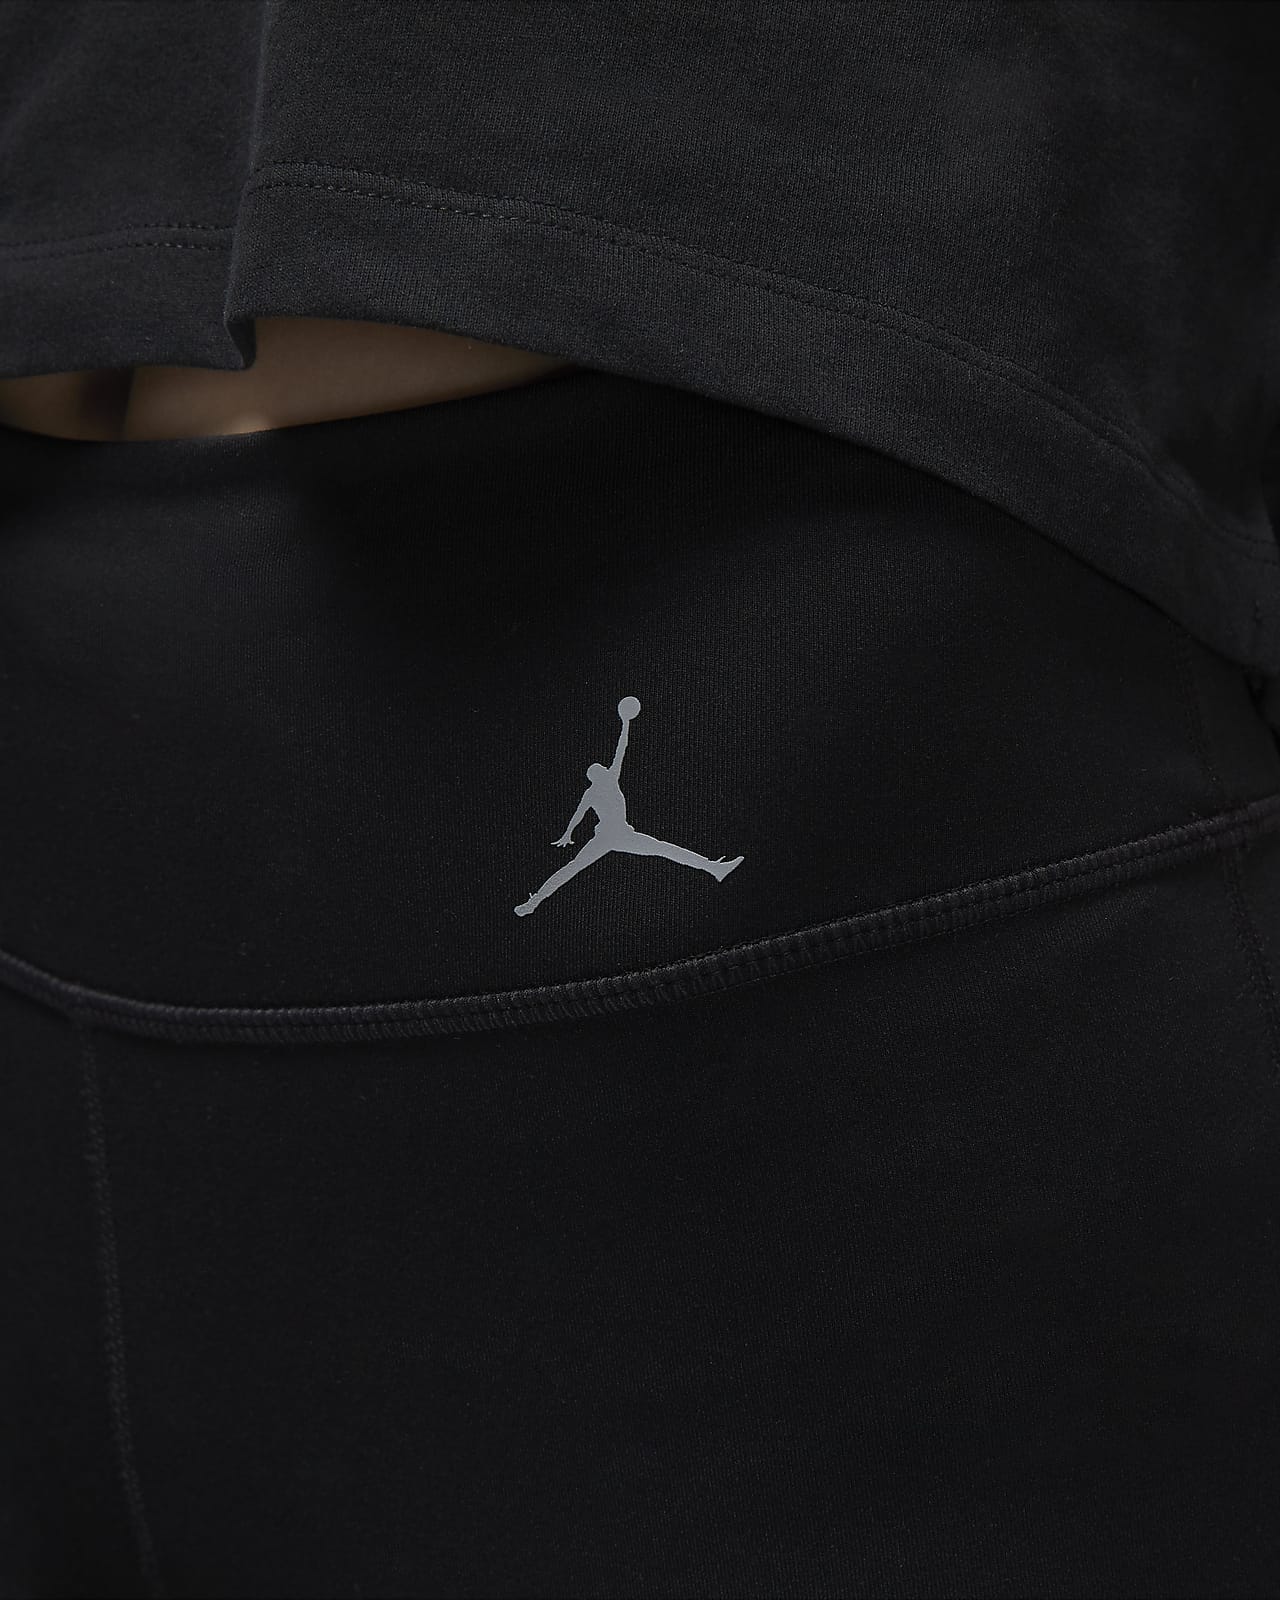 Nike Air all over logo leggings in black